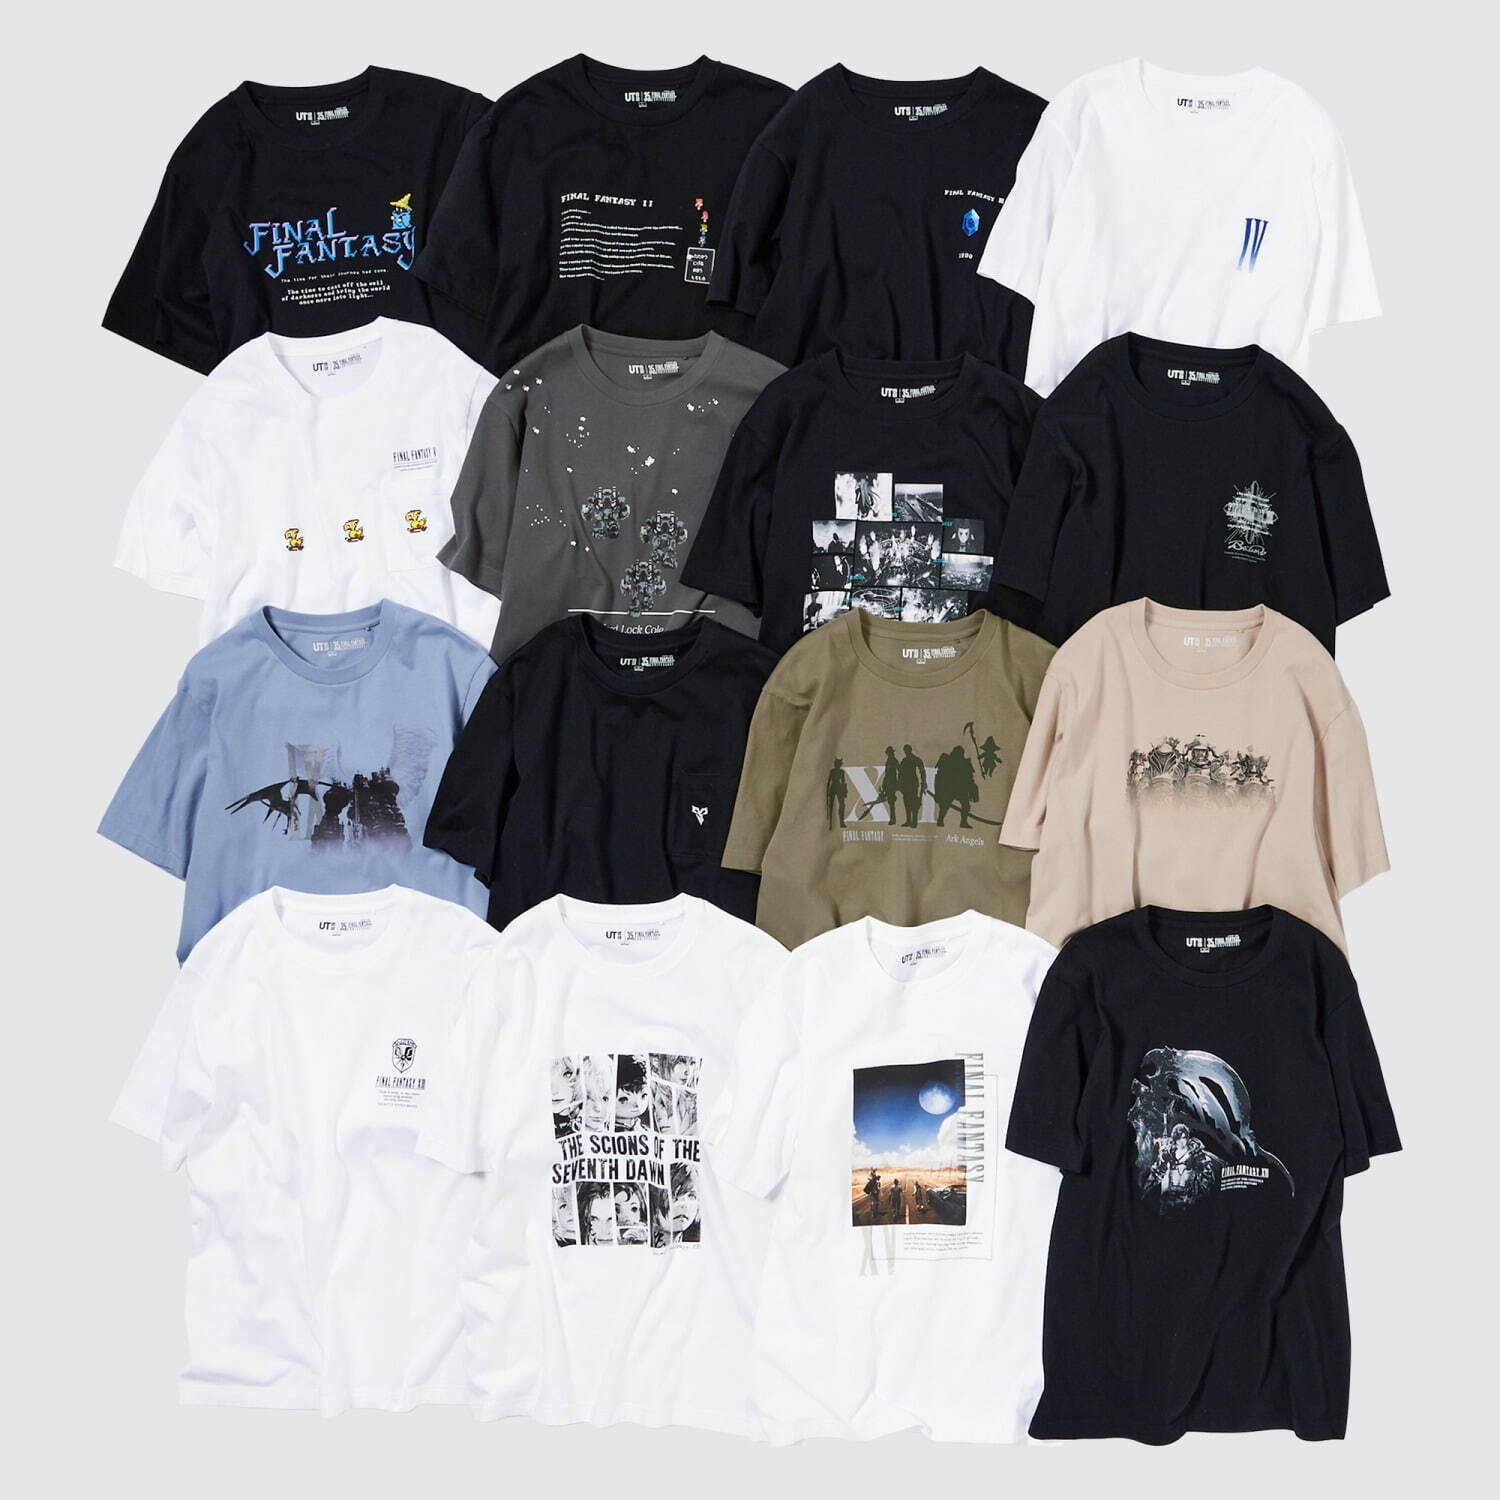 ユニクロ「UT」ファイナルファンタジーのプリントTシャツ、第1作から「XVI」まで16シリーズ